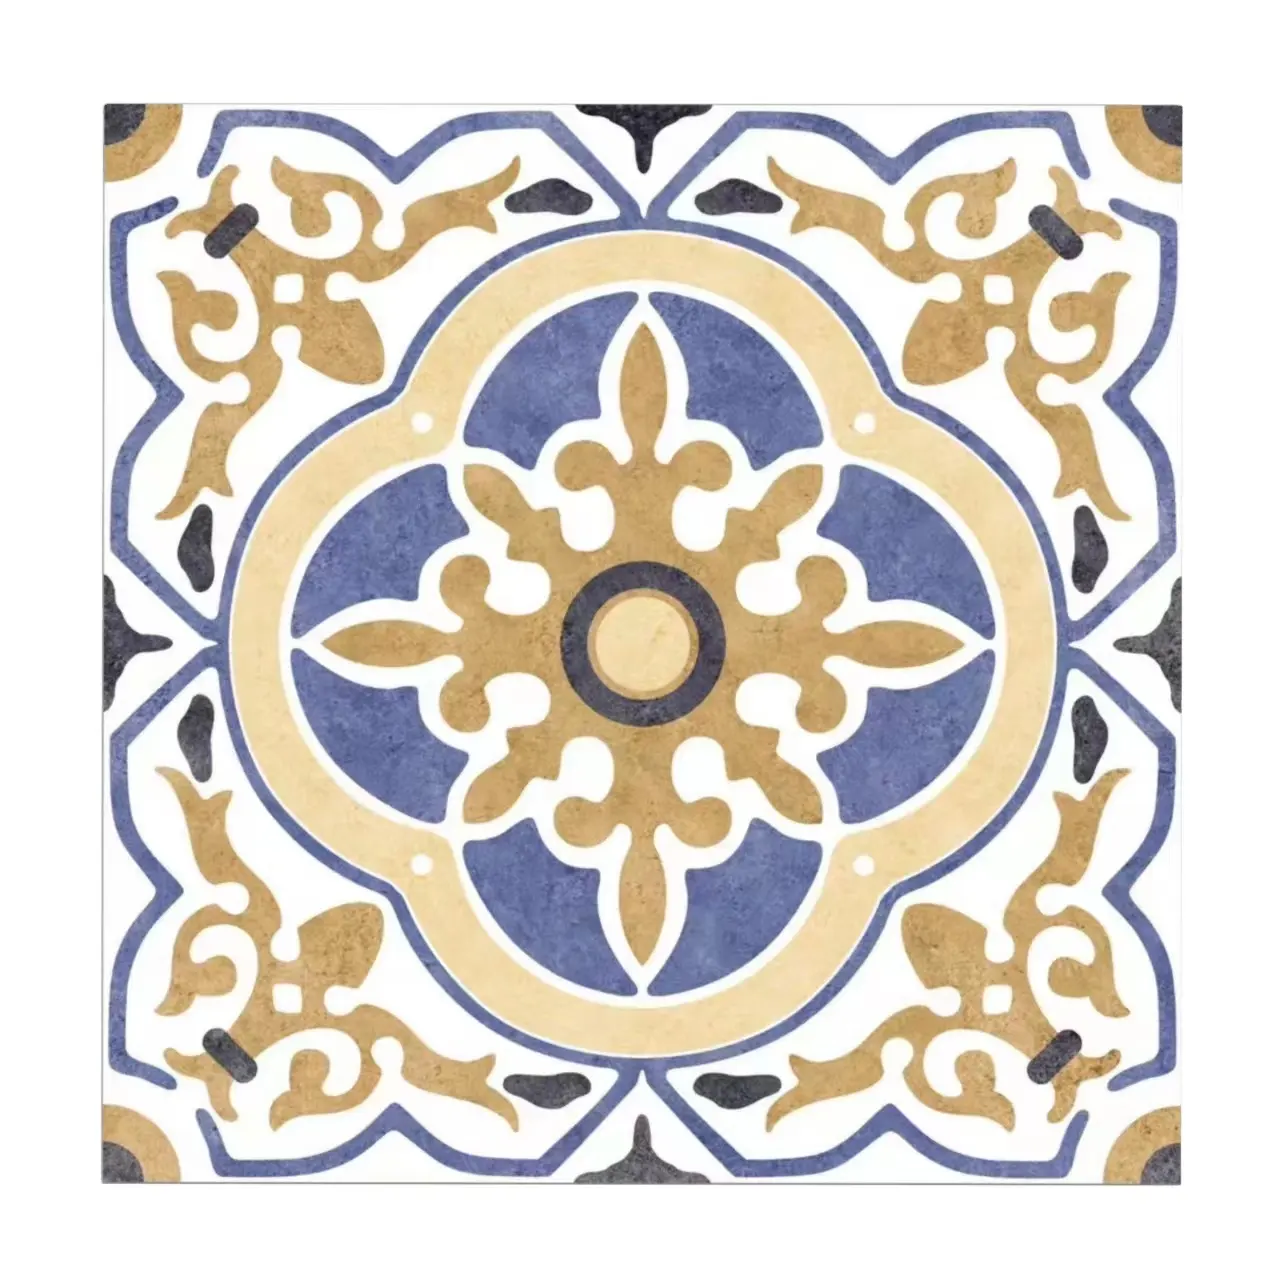 Factory custom European Design Style porcelain kitchen floor decor pattern tiles flower french pattern tile